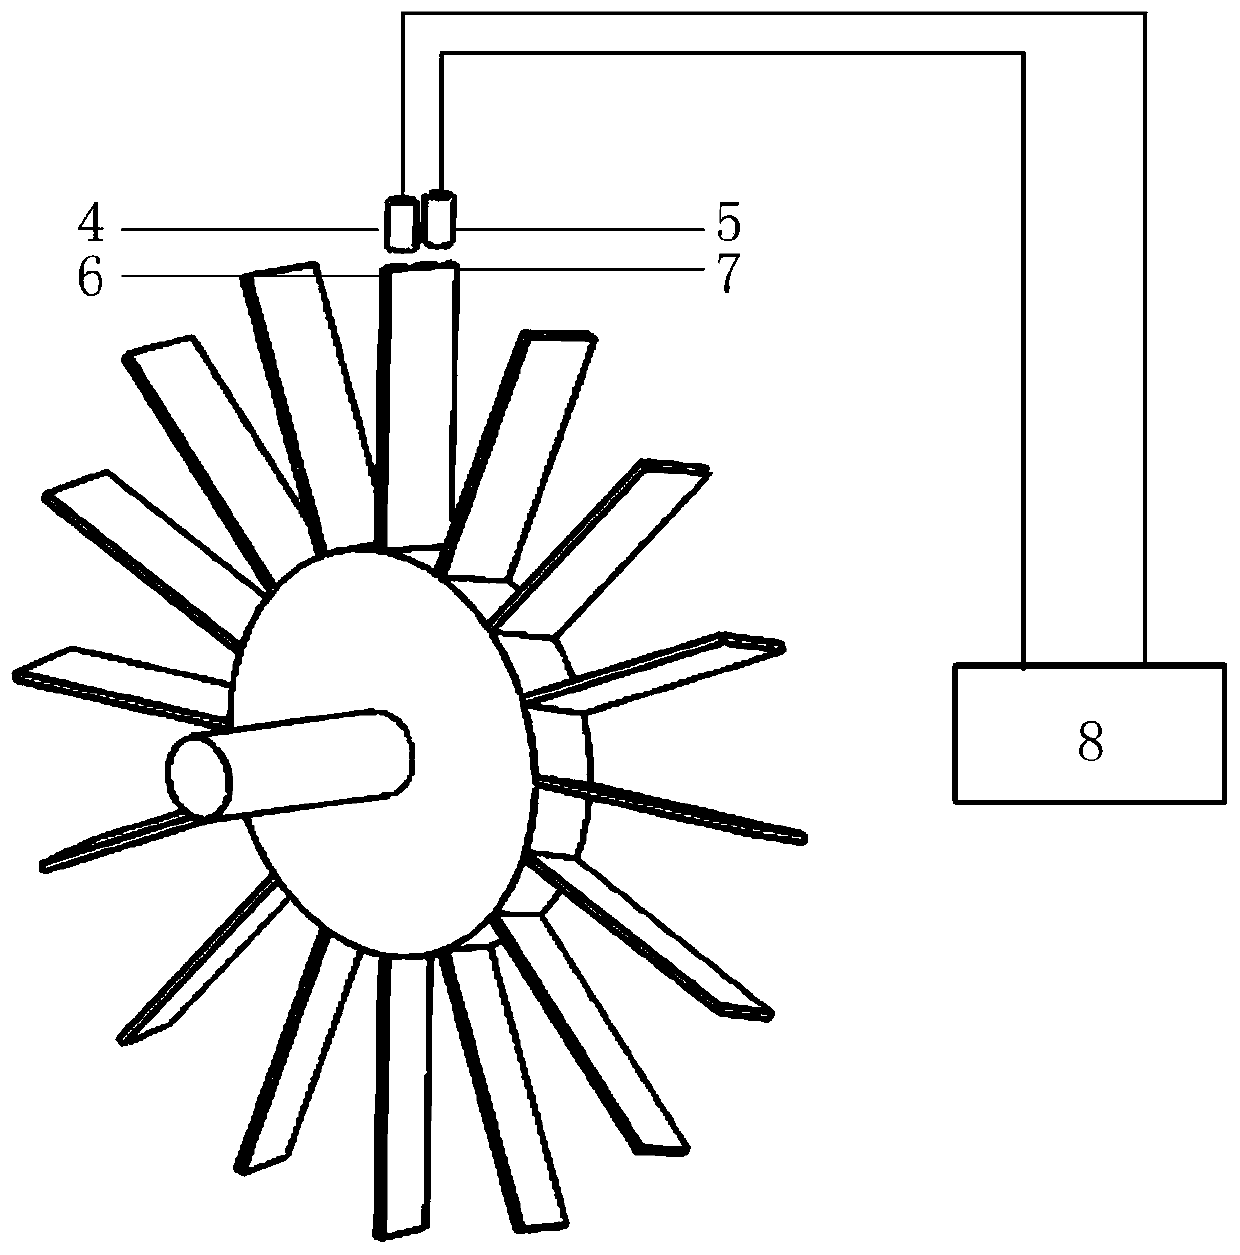 Blade torsional vibration displacement measurement method based on blade tip timing principle